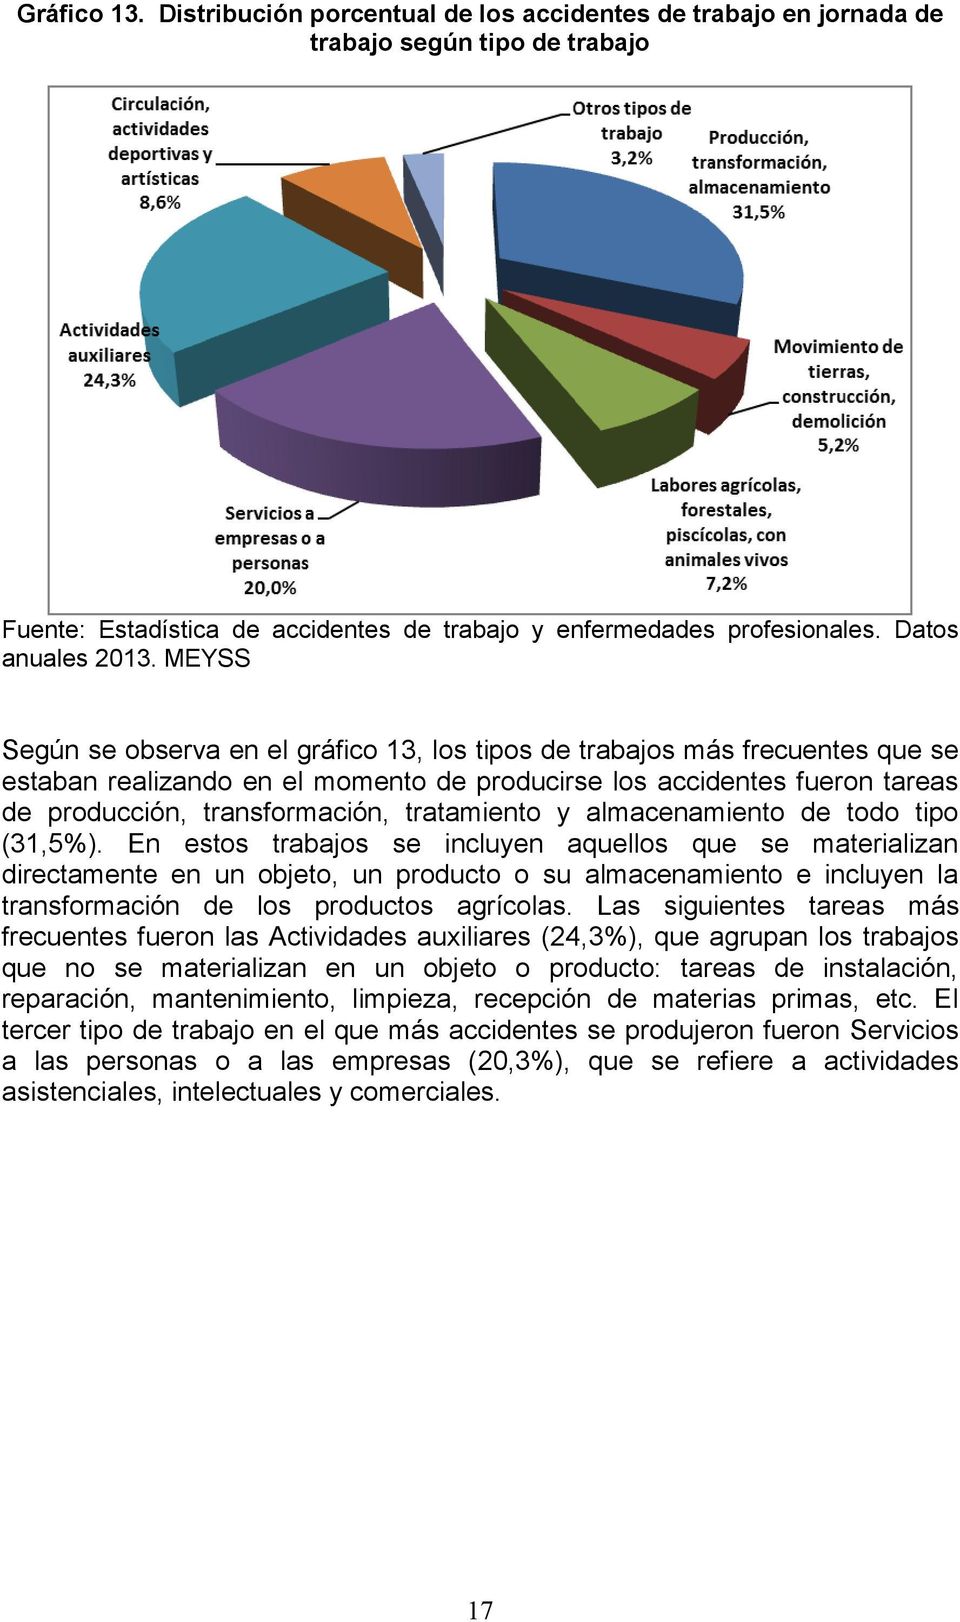 tratamiento y almacenamiento de todo tipo (31,5%).